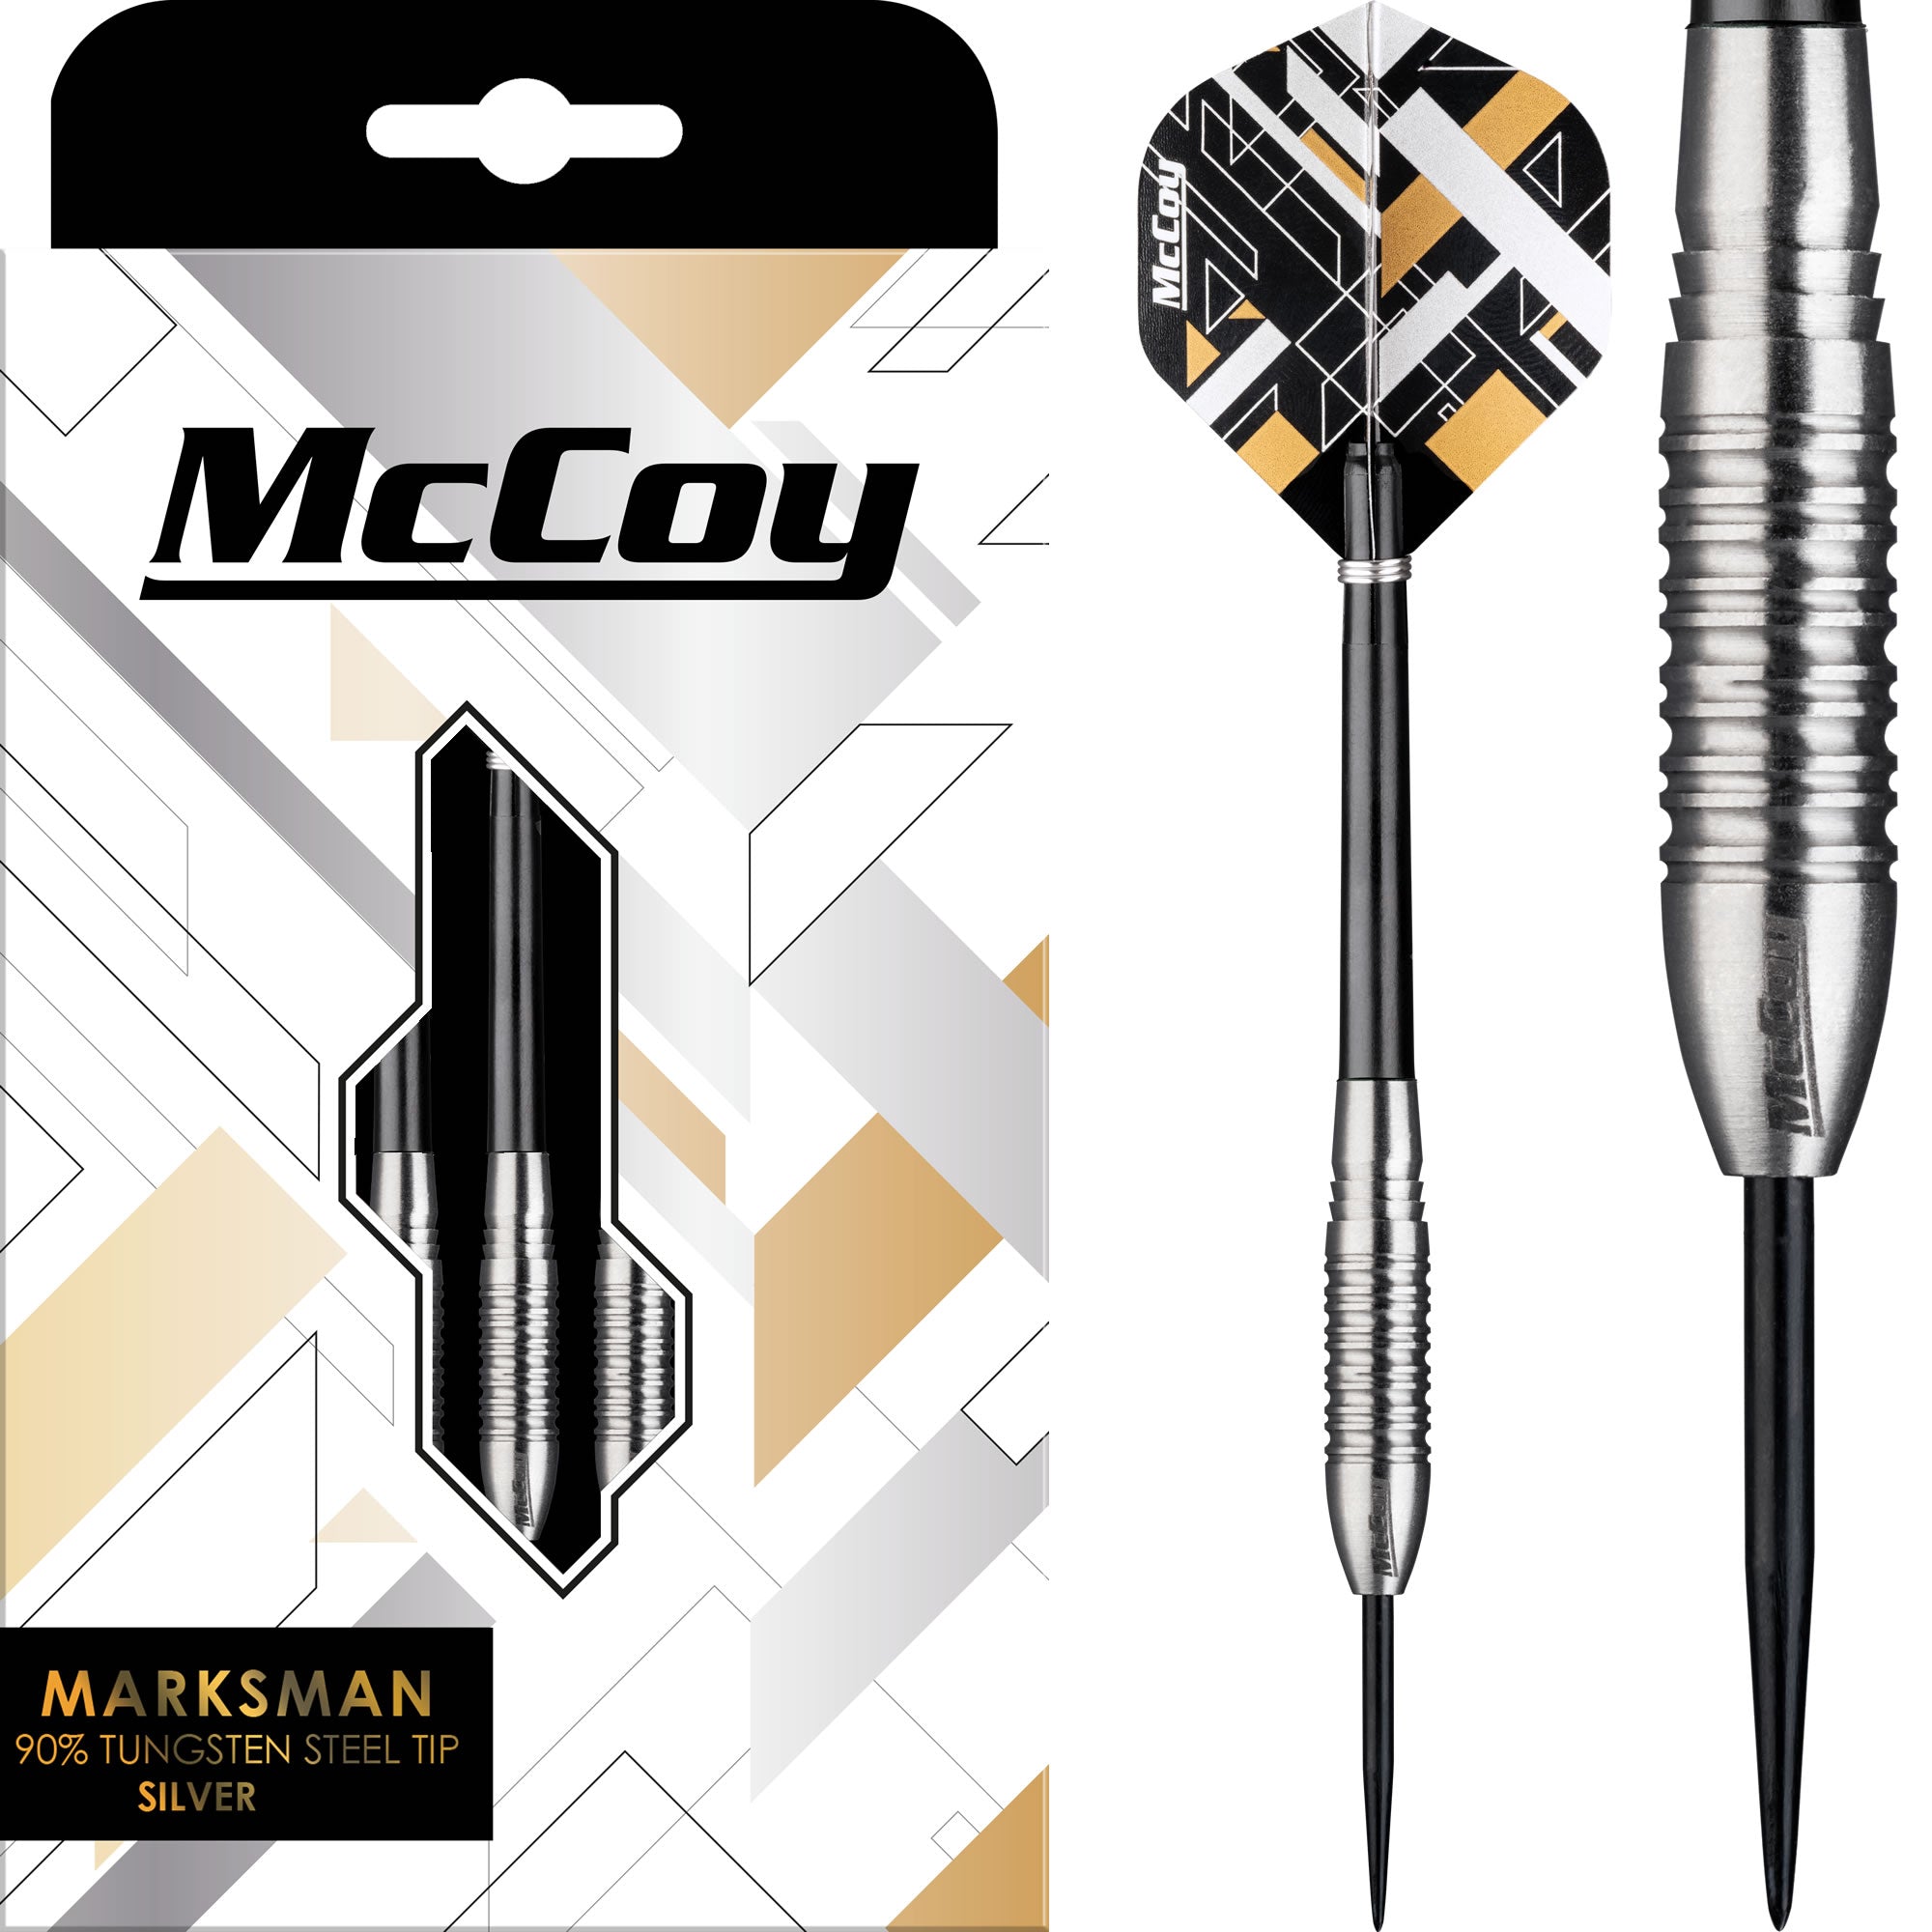 McCoy Marksman - 90% Steel Tip Tungsten - Silver